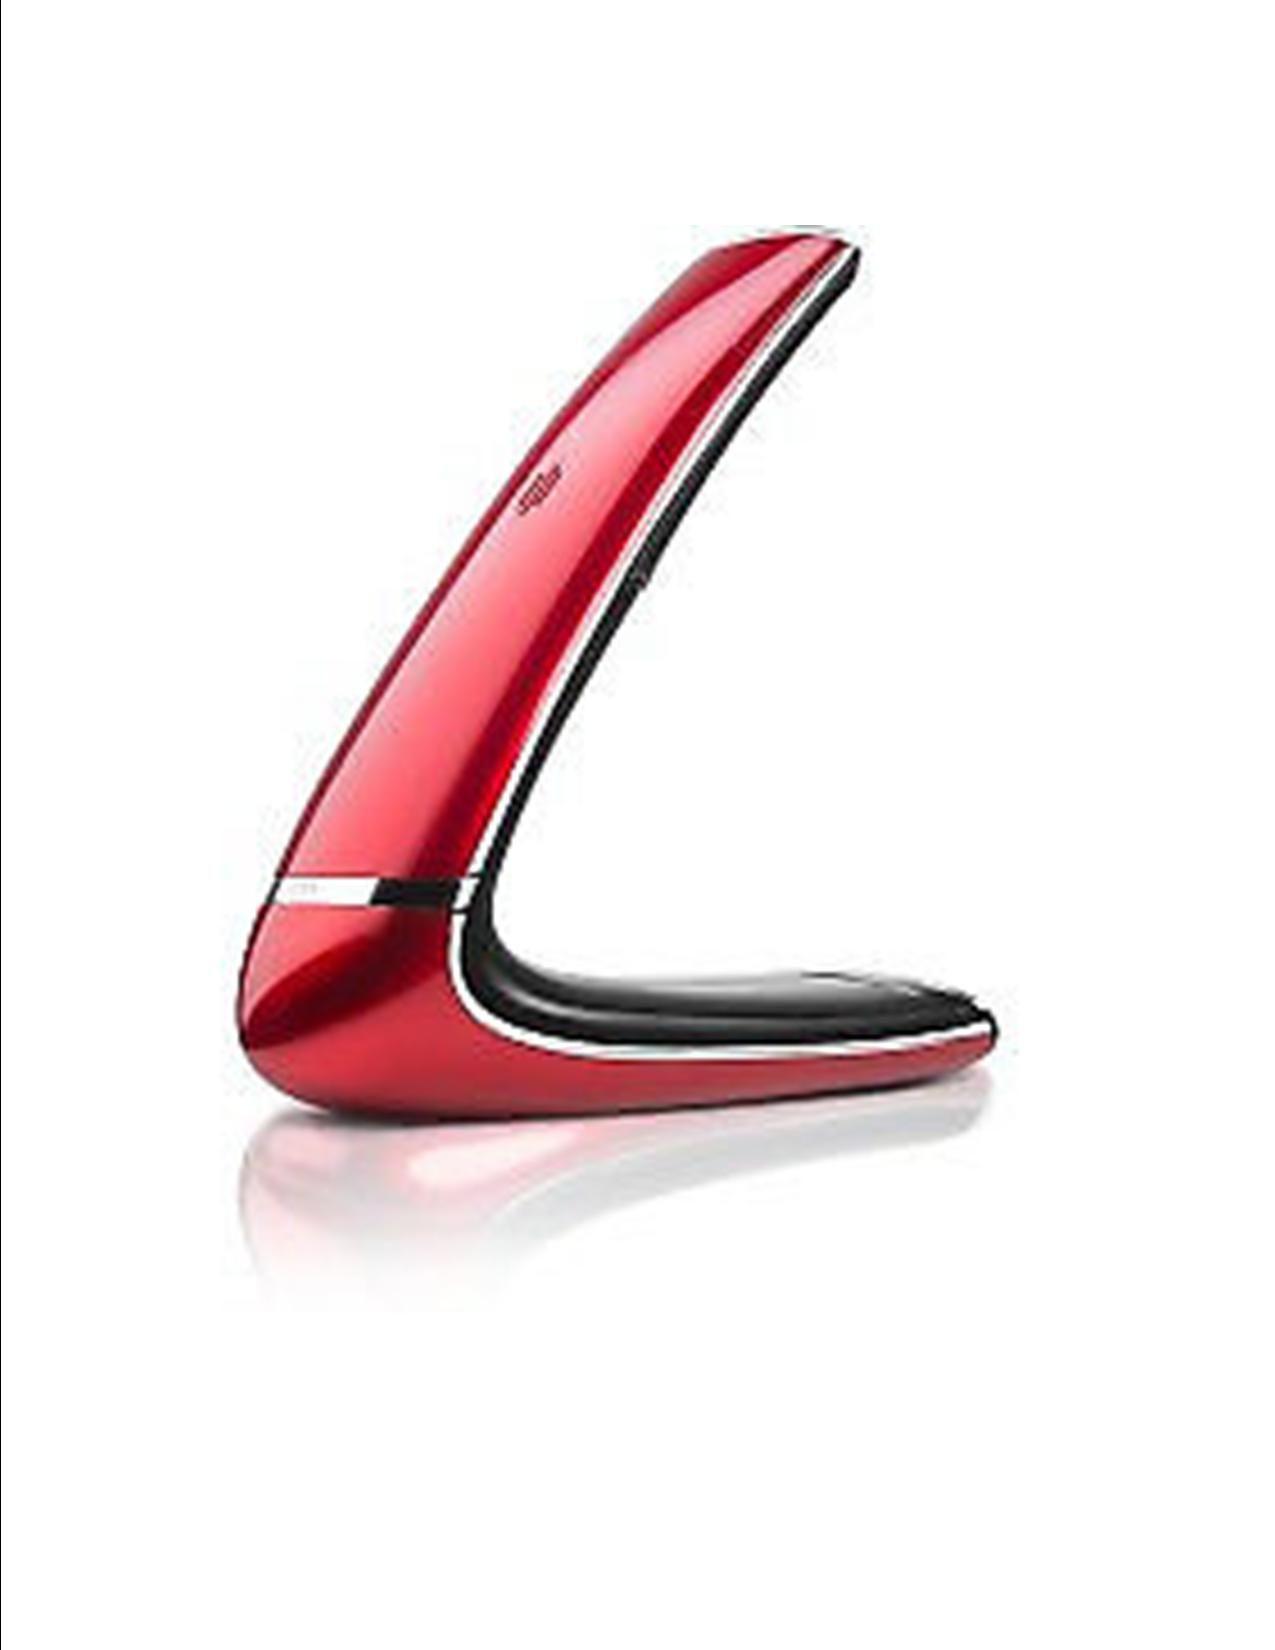 Metal Boomerang Logo - AEG Boomerang 10 Metallic Red White- Brand New At Low Cost